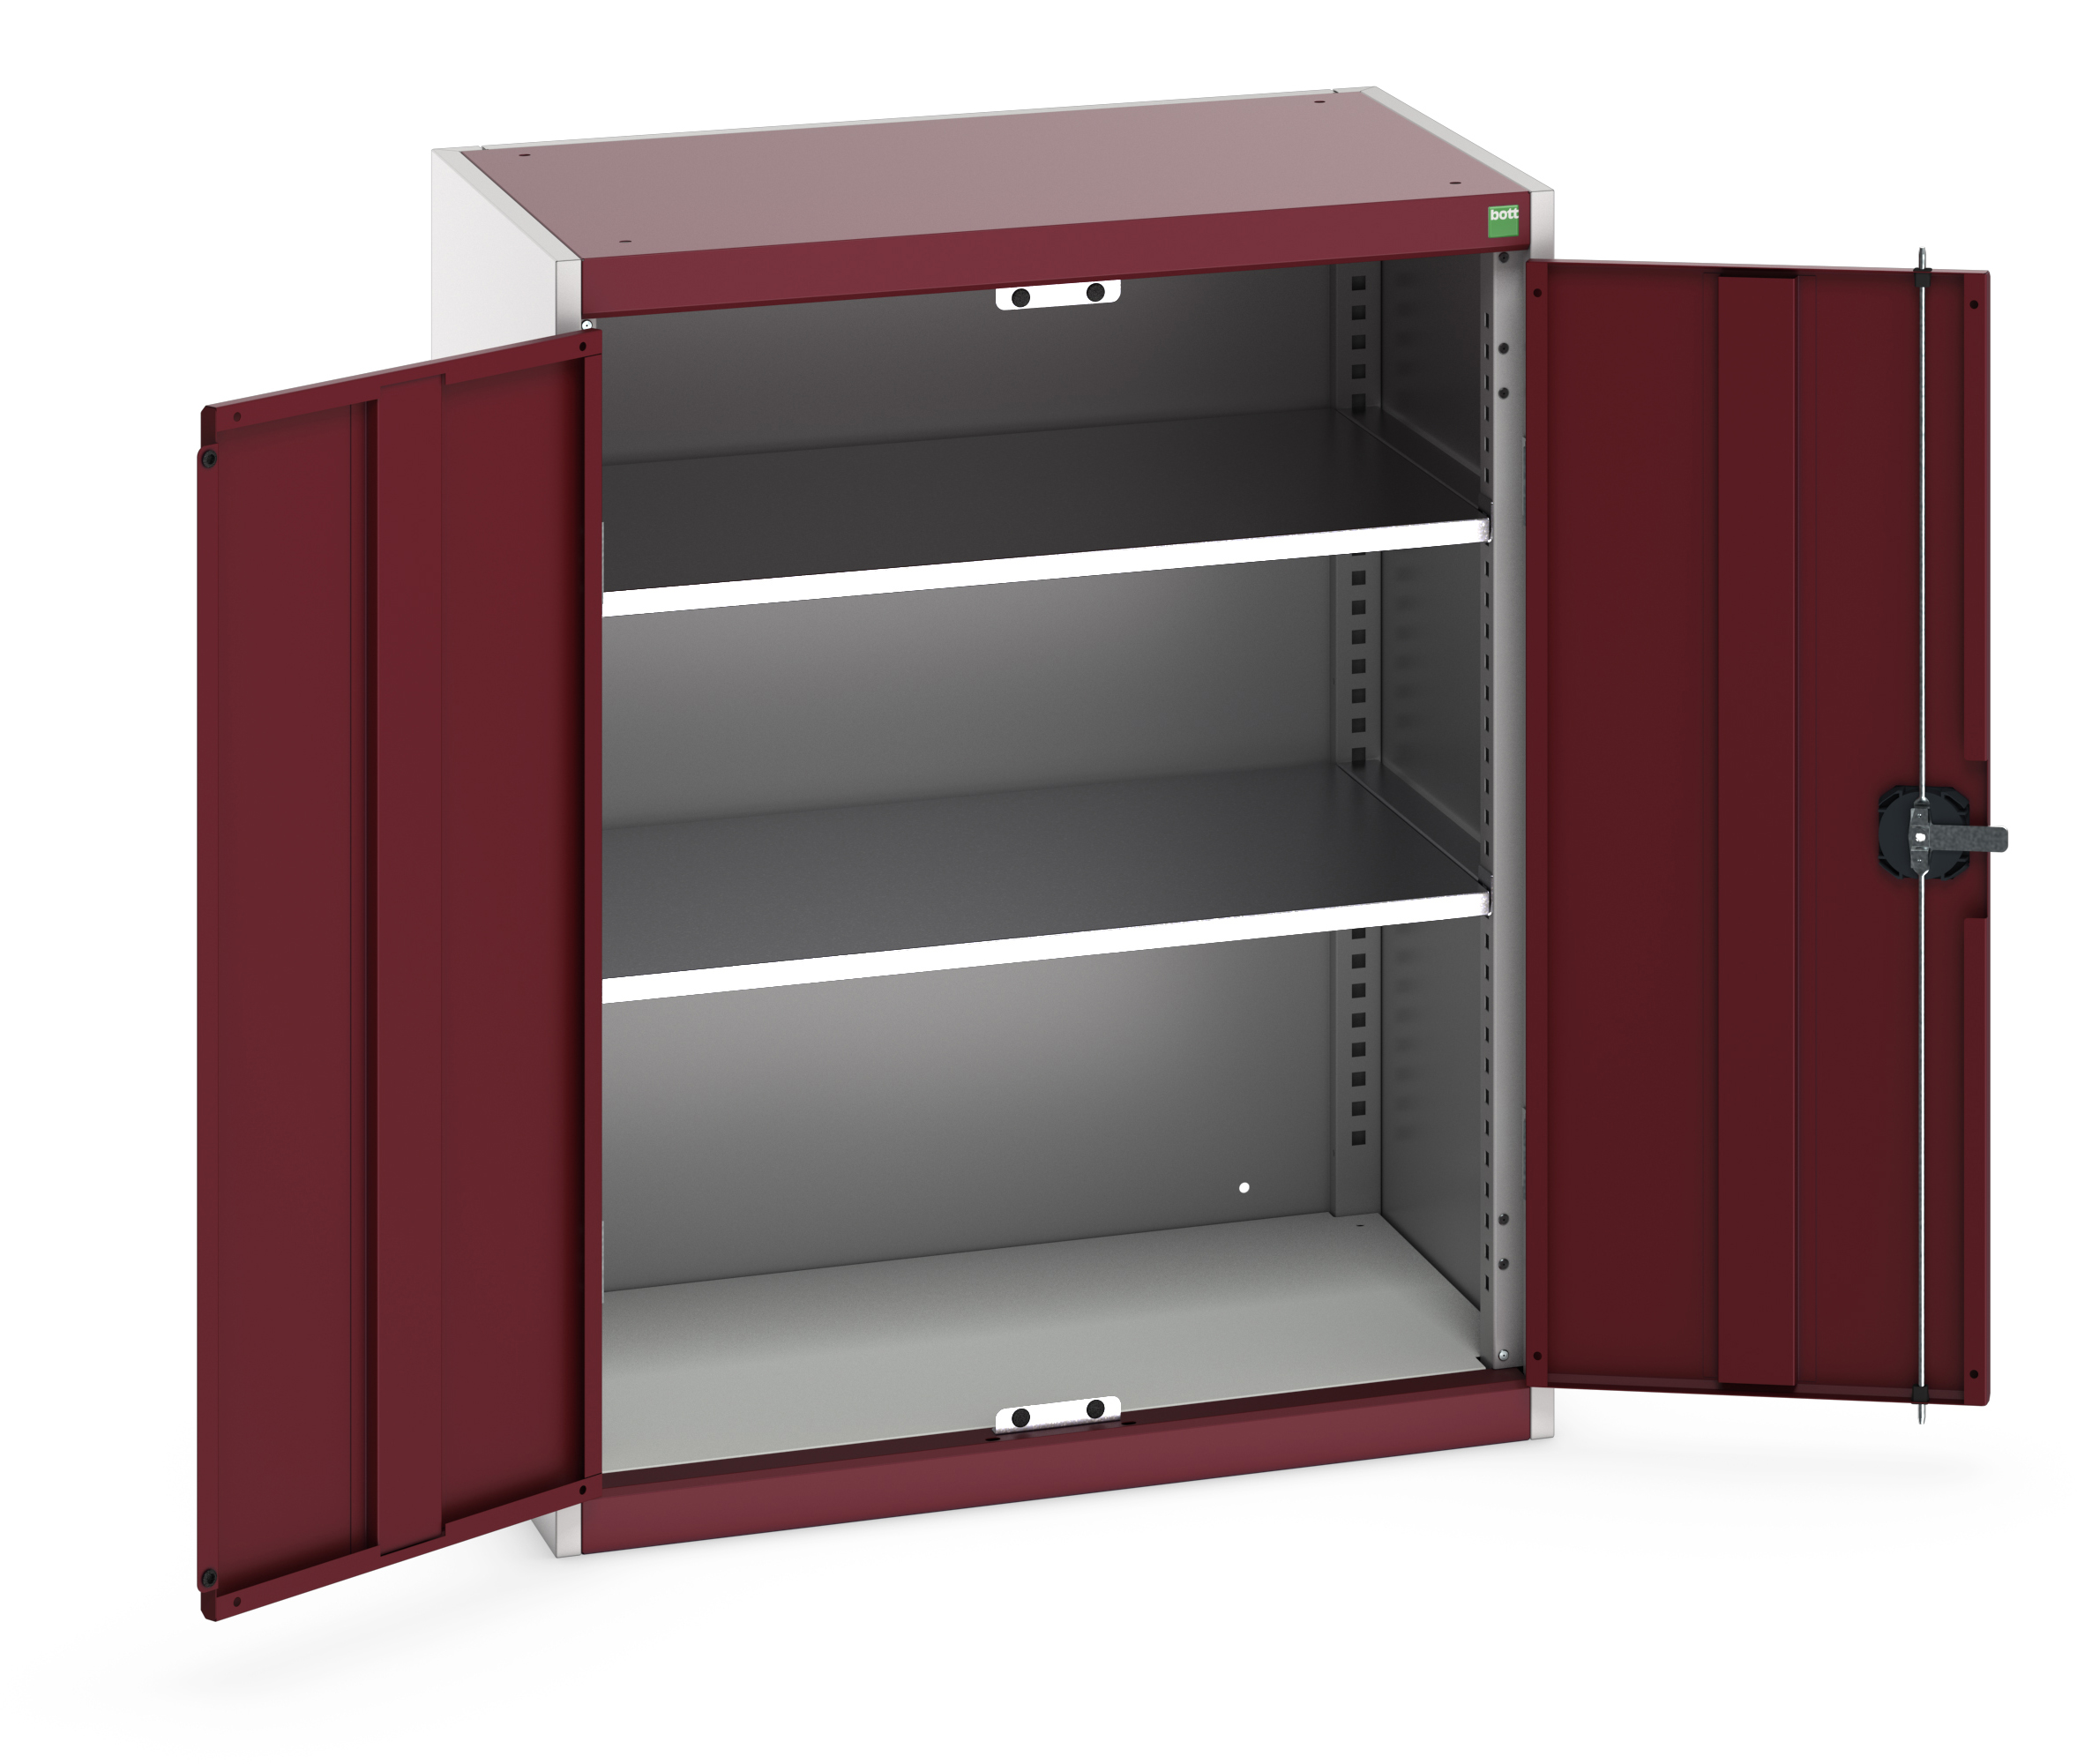 Bott Cubio Standard Duty Shelf Cupboard - 40031021.24V